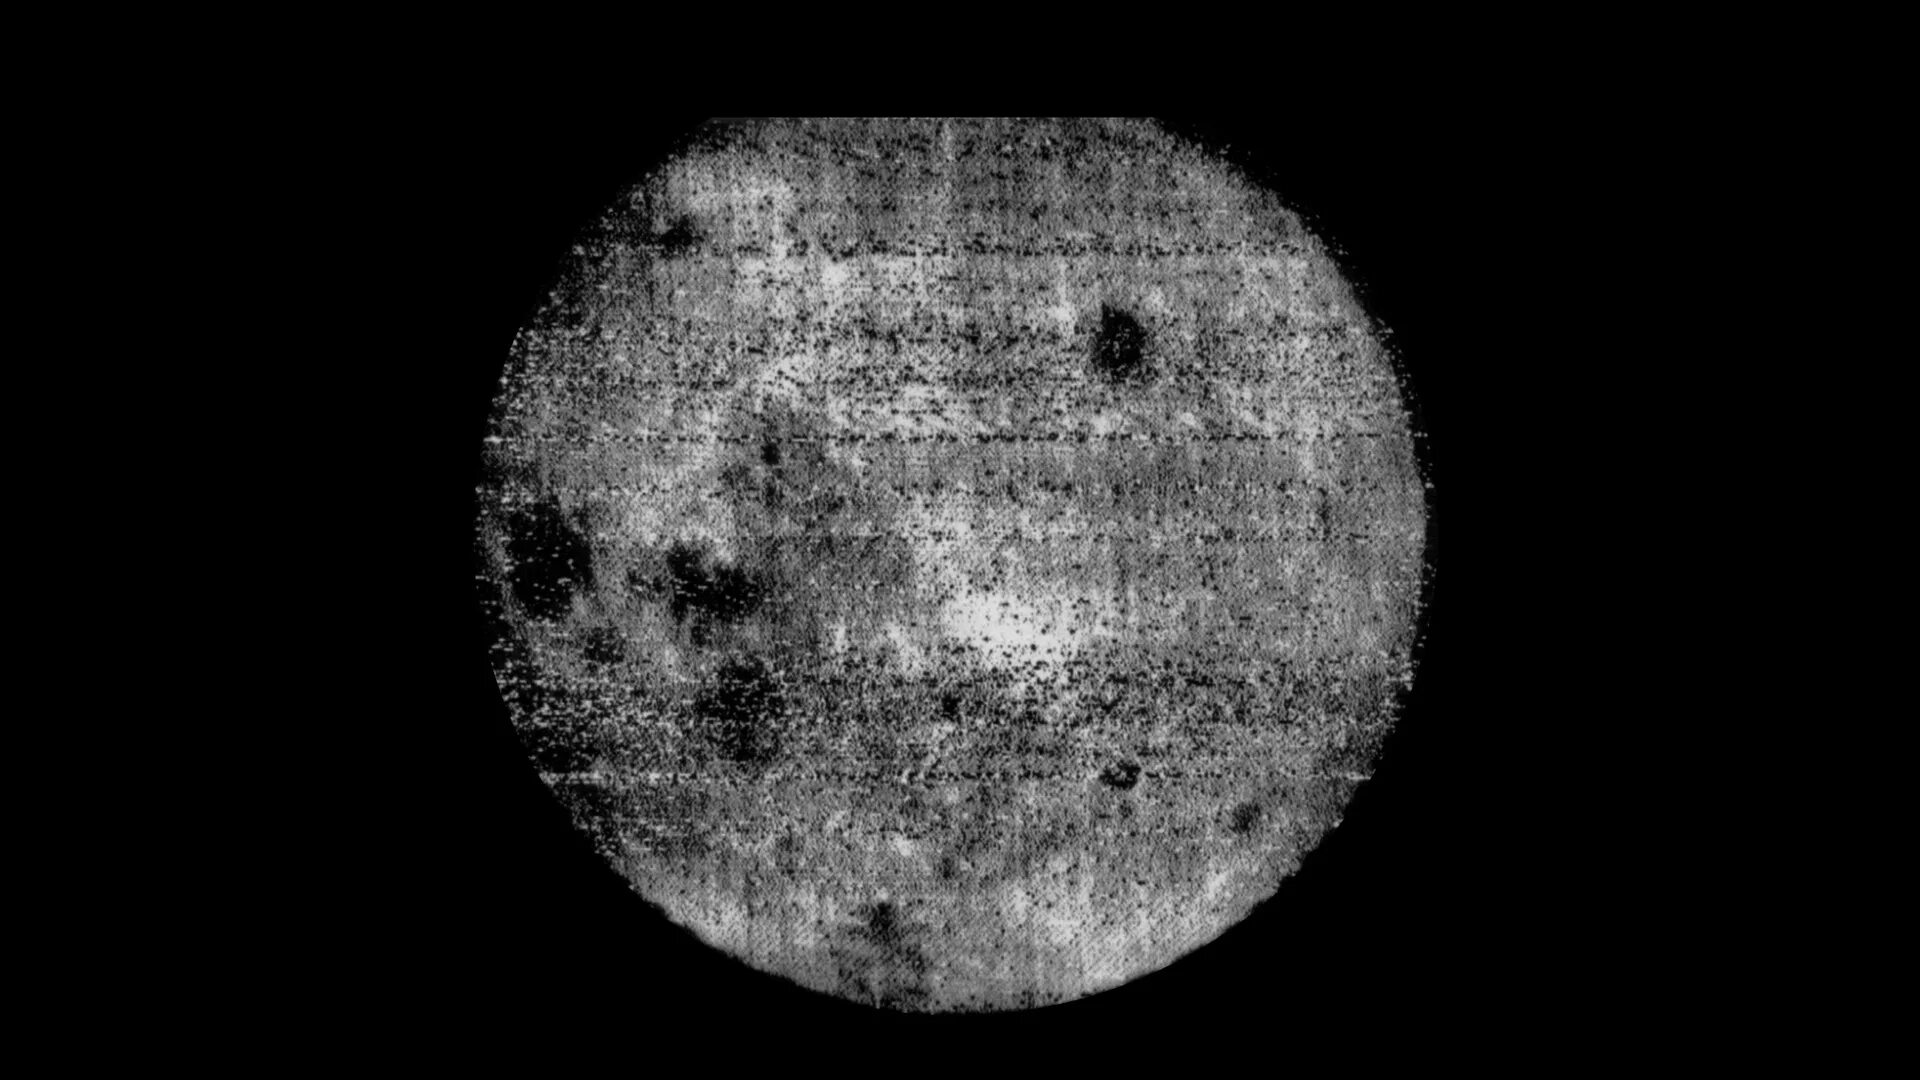 Key t ru. Снимок обратной стороны Луны 1959. Луна 3 снимки обратной стороны Луны. 1959 Снимки Обратная сторона Луны. Фото обратной стороны Луны 1959.